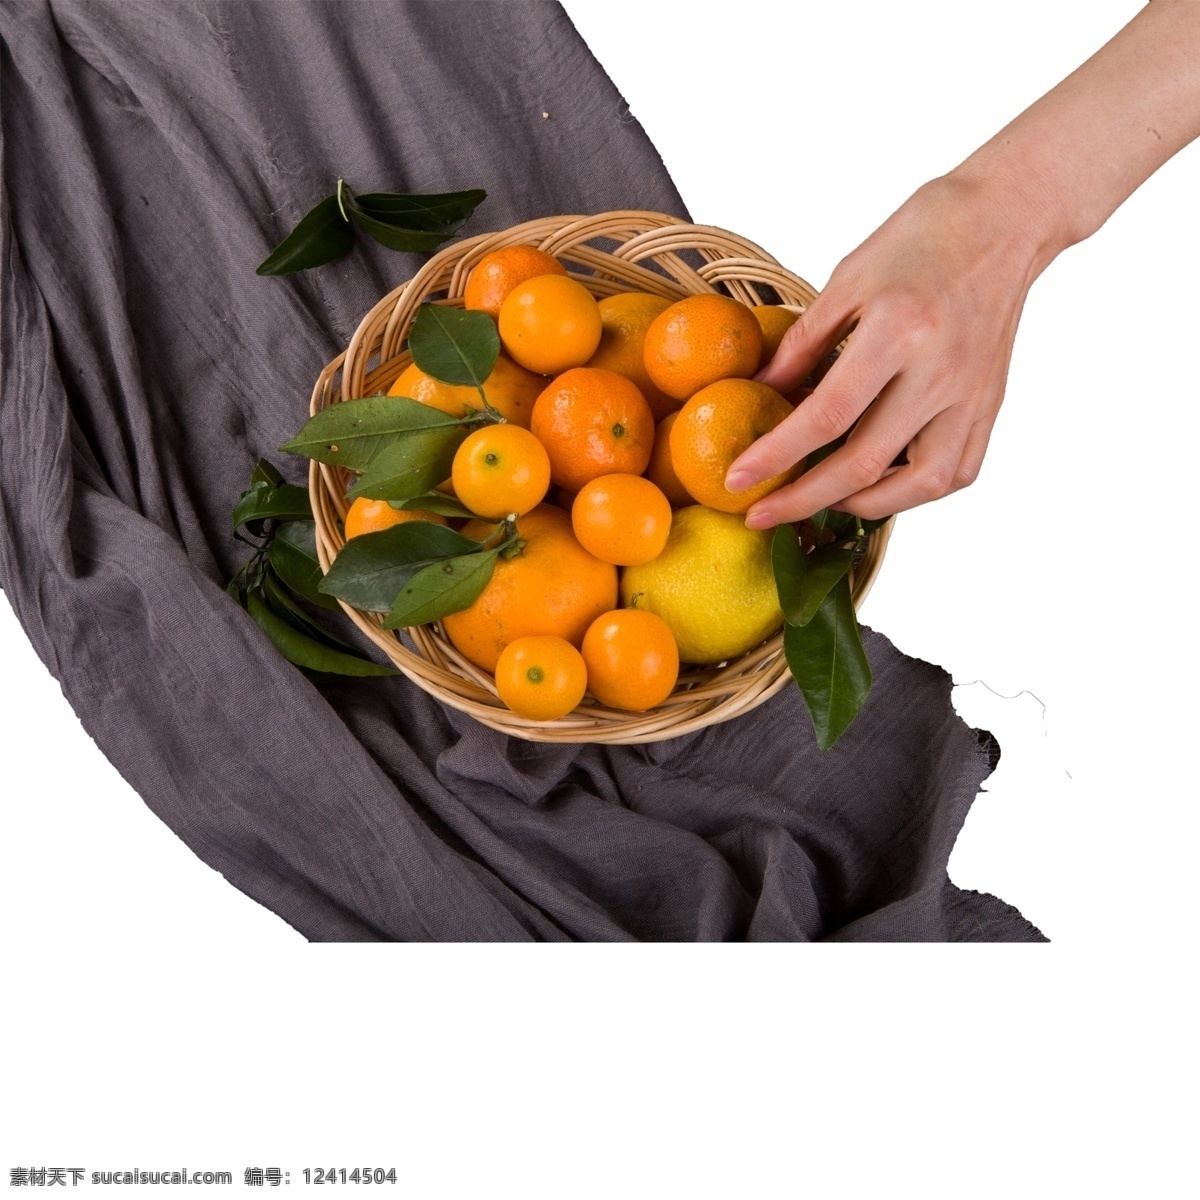 黄色 创意 篮子 橘子 食物 元素 一篮子 编织 纹理 装饰 光泽 质感 美食 味道 吃的 叶子 桌布 真实 水果 竹篮子